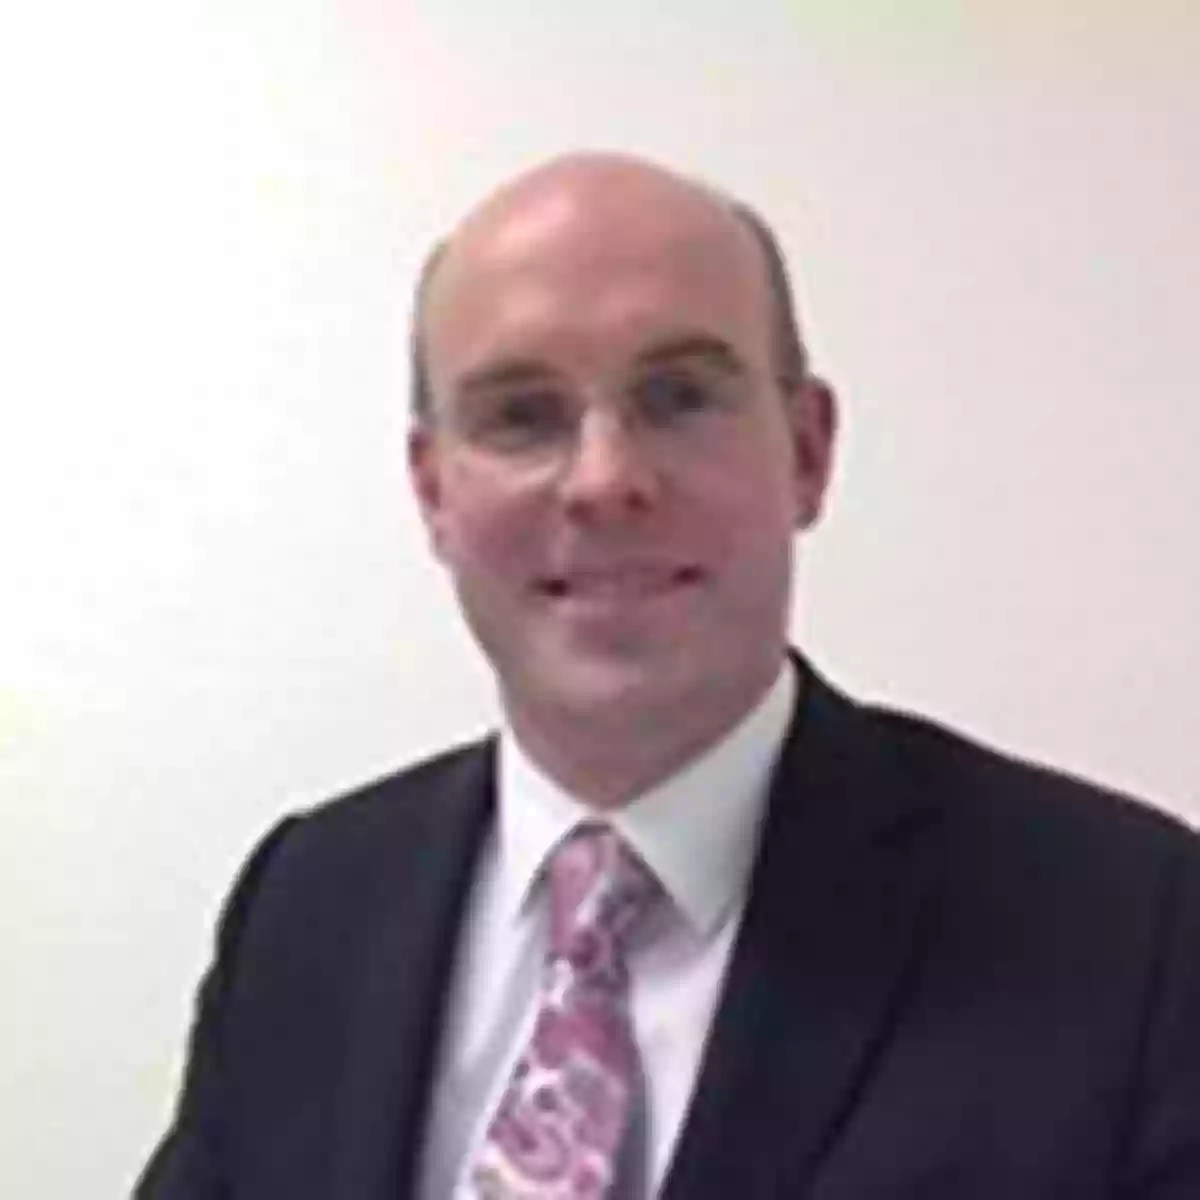 Jonathan Bamford - Mortgage and Protection Adviser